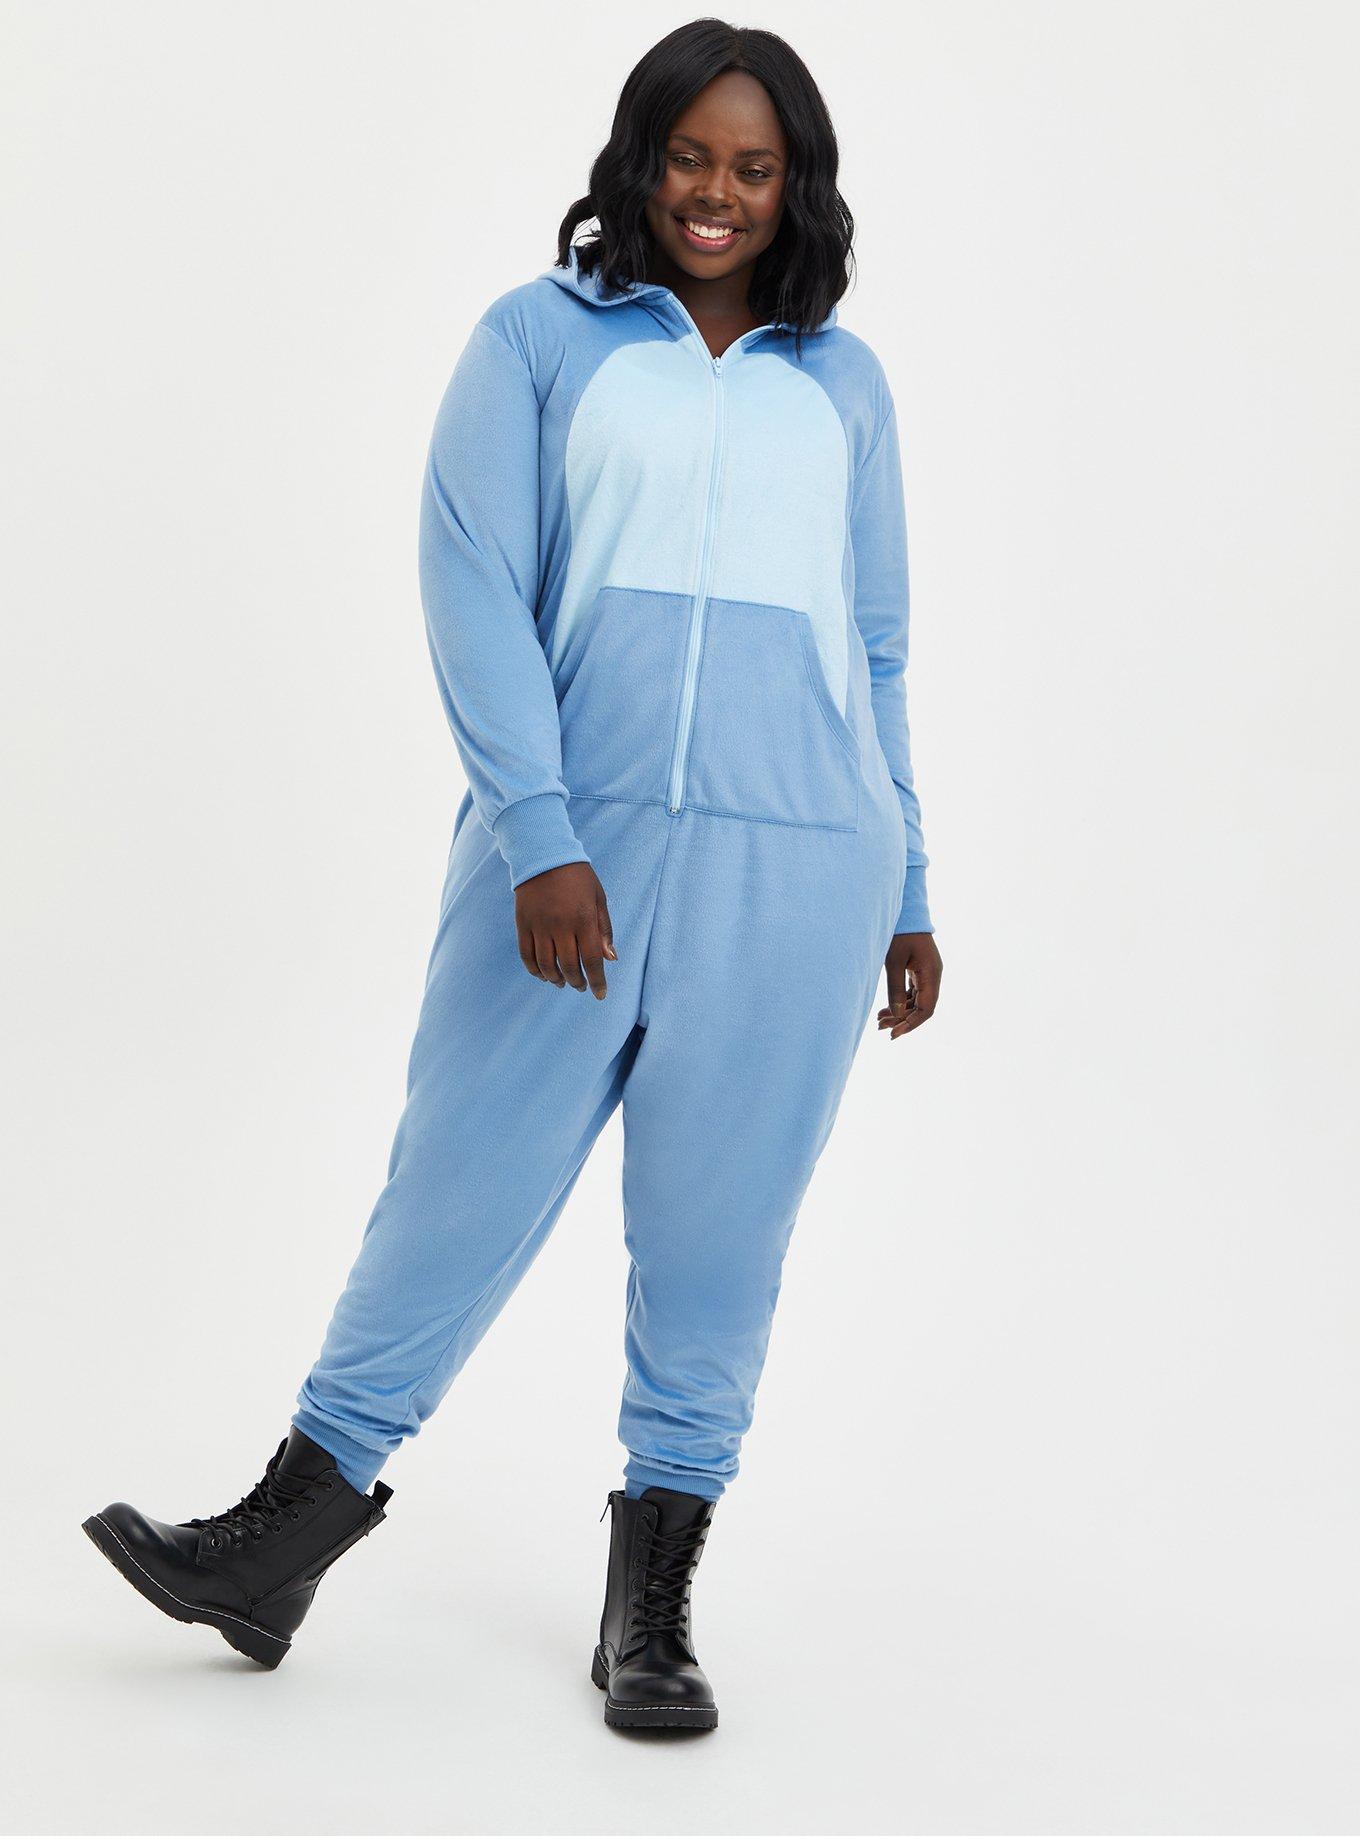 Disney Lilo Stitch Unisex Fleece One Piece Pajamas, Sizes S-XL 